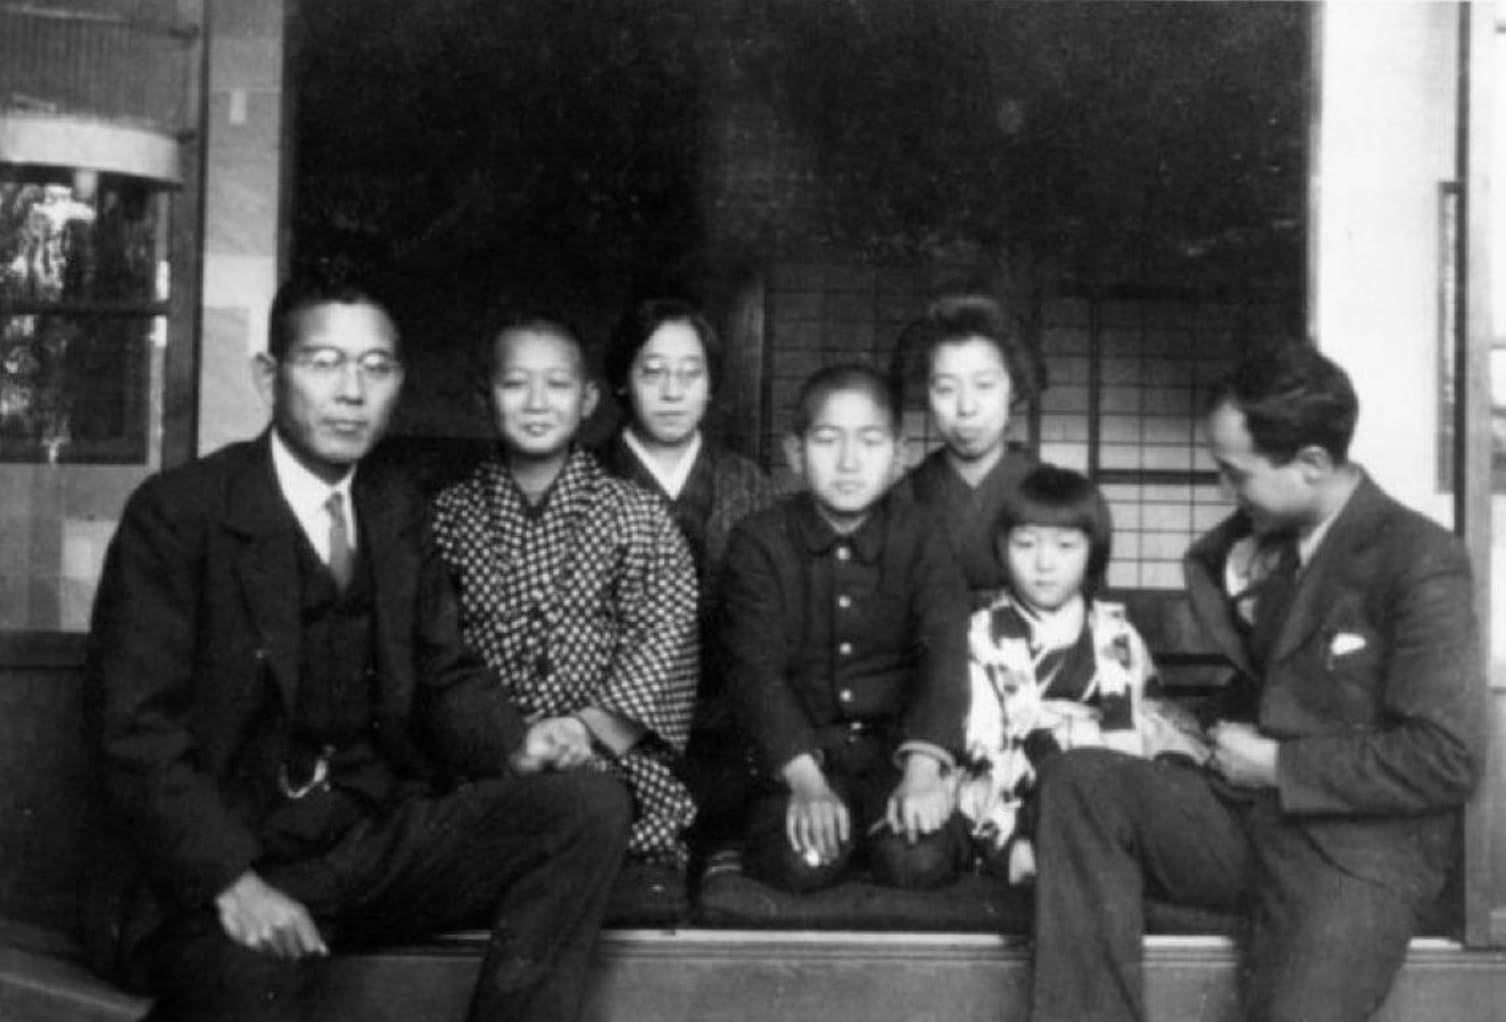 Photographie d’isamu noguchi (à droite) avec l’oncle totaro takagi et ses enfants, petit-enfants, au japon, 1931